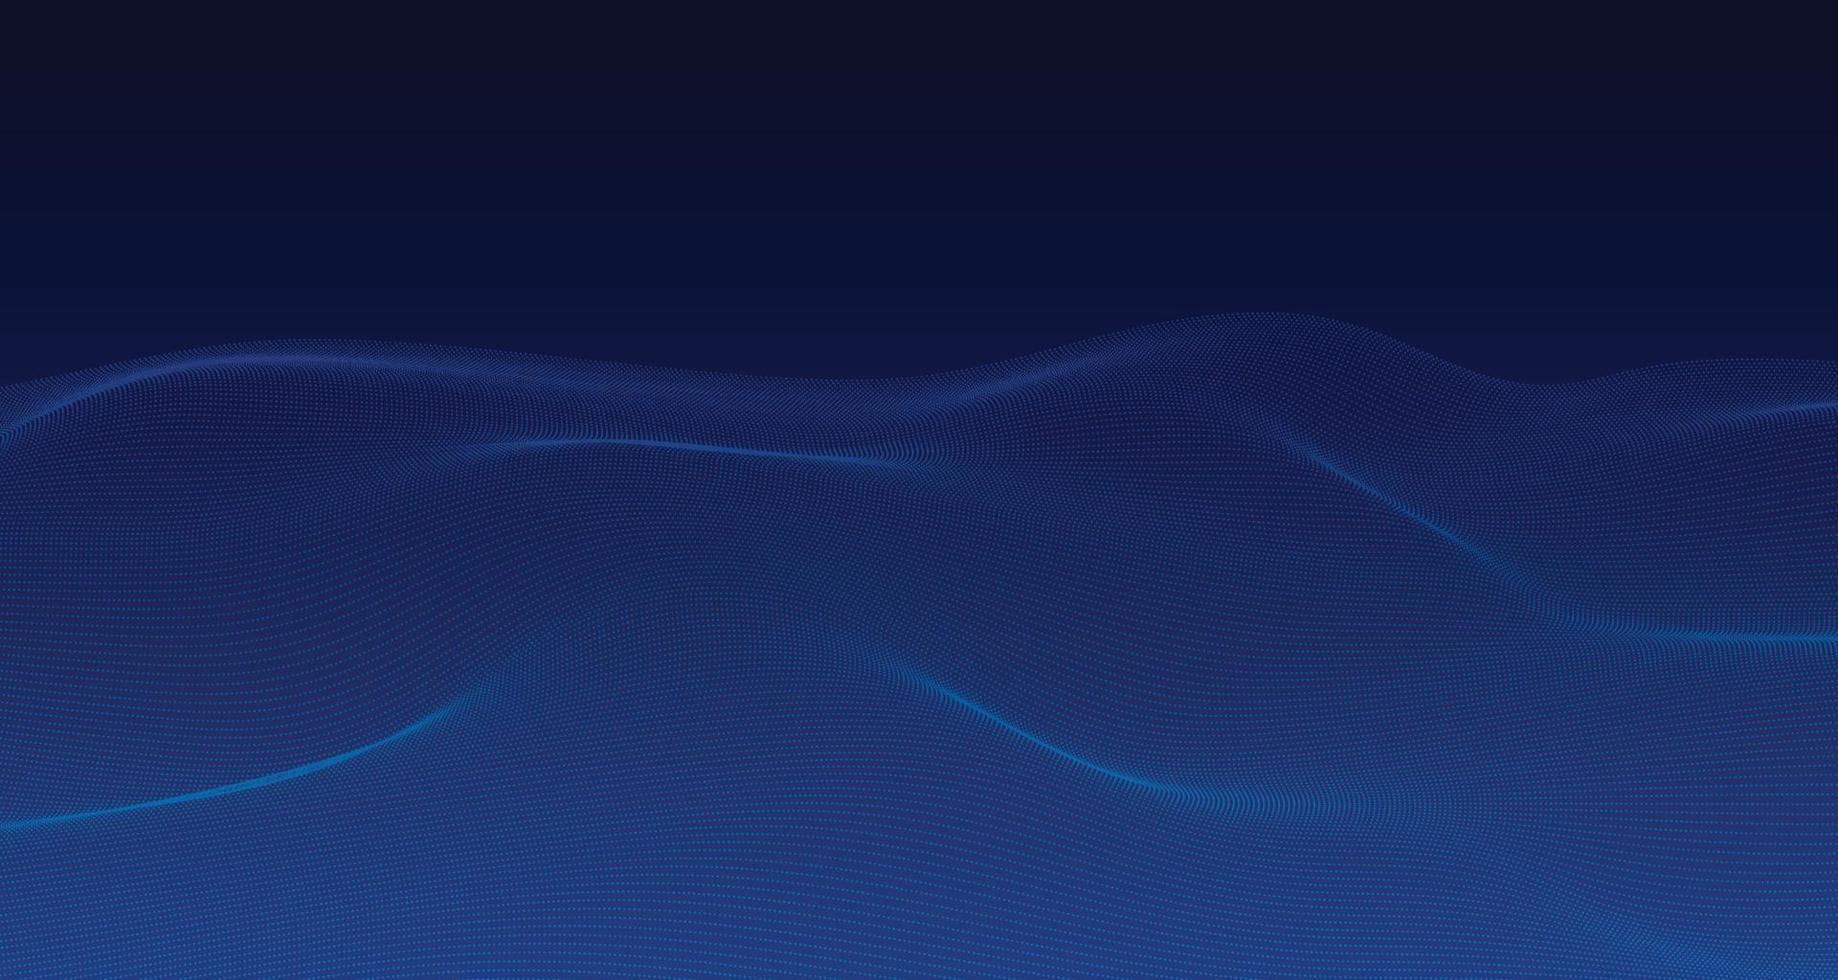 disegno astratto delle particelle blu dello sfondo del modello di tecnologia grafica. ondulato cerchio punti onda elemento sullo schermo blu sfumato. illustrazione vettoriale